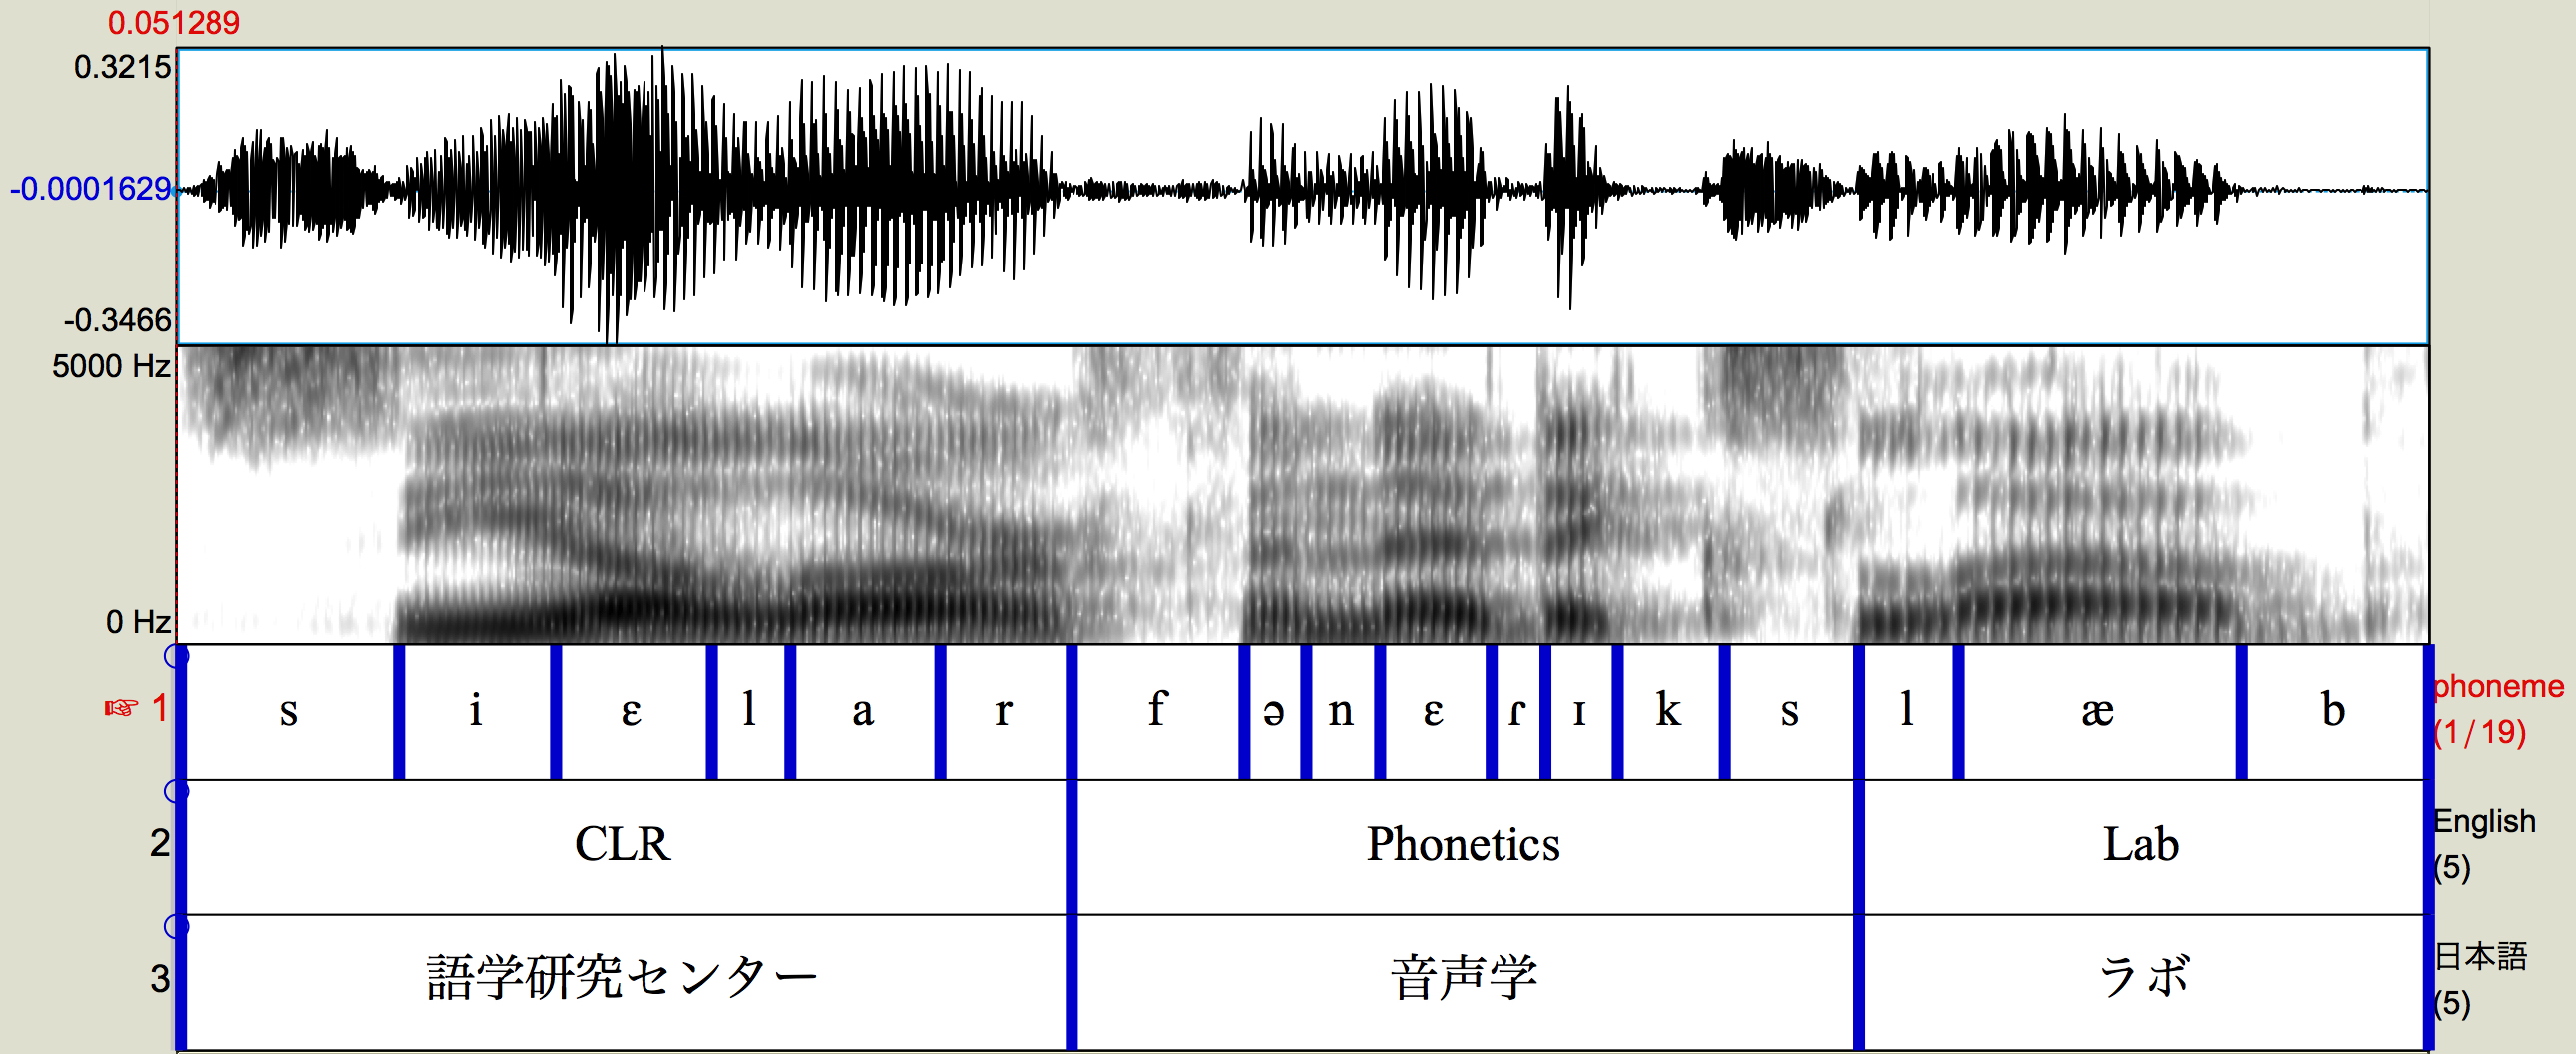 acoustic phonetics